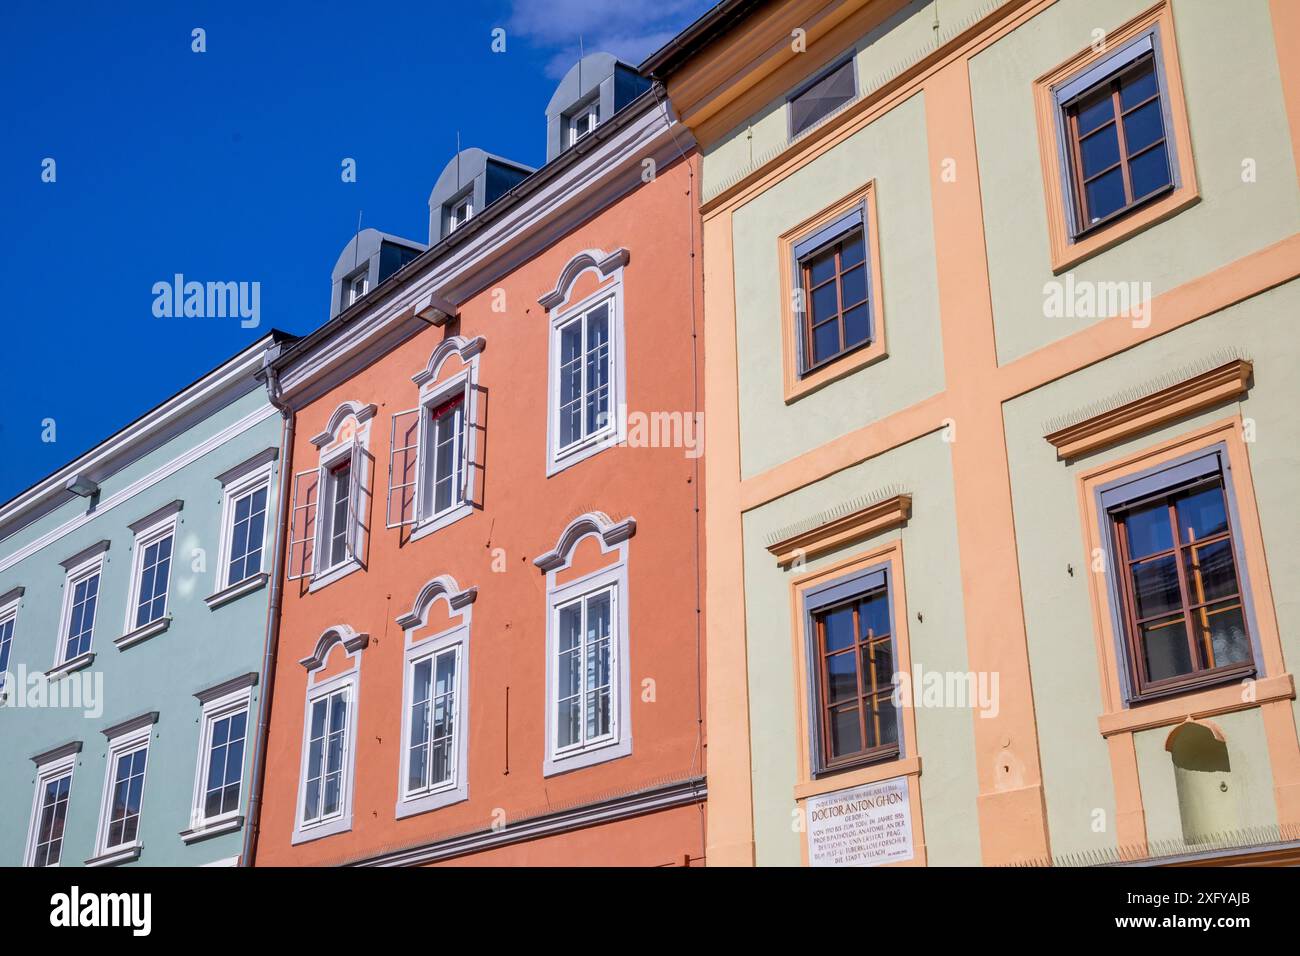 Facciate colorate degli edifici che si affacciano sul viale principale del centro storico di Villach, Carinzia, Austria Foto Stock